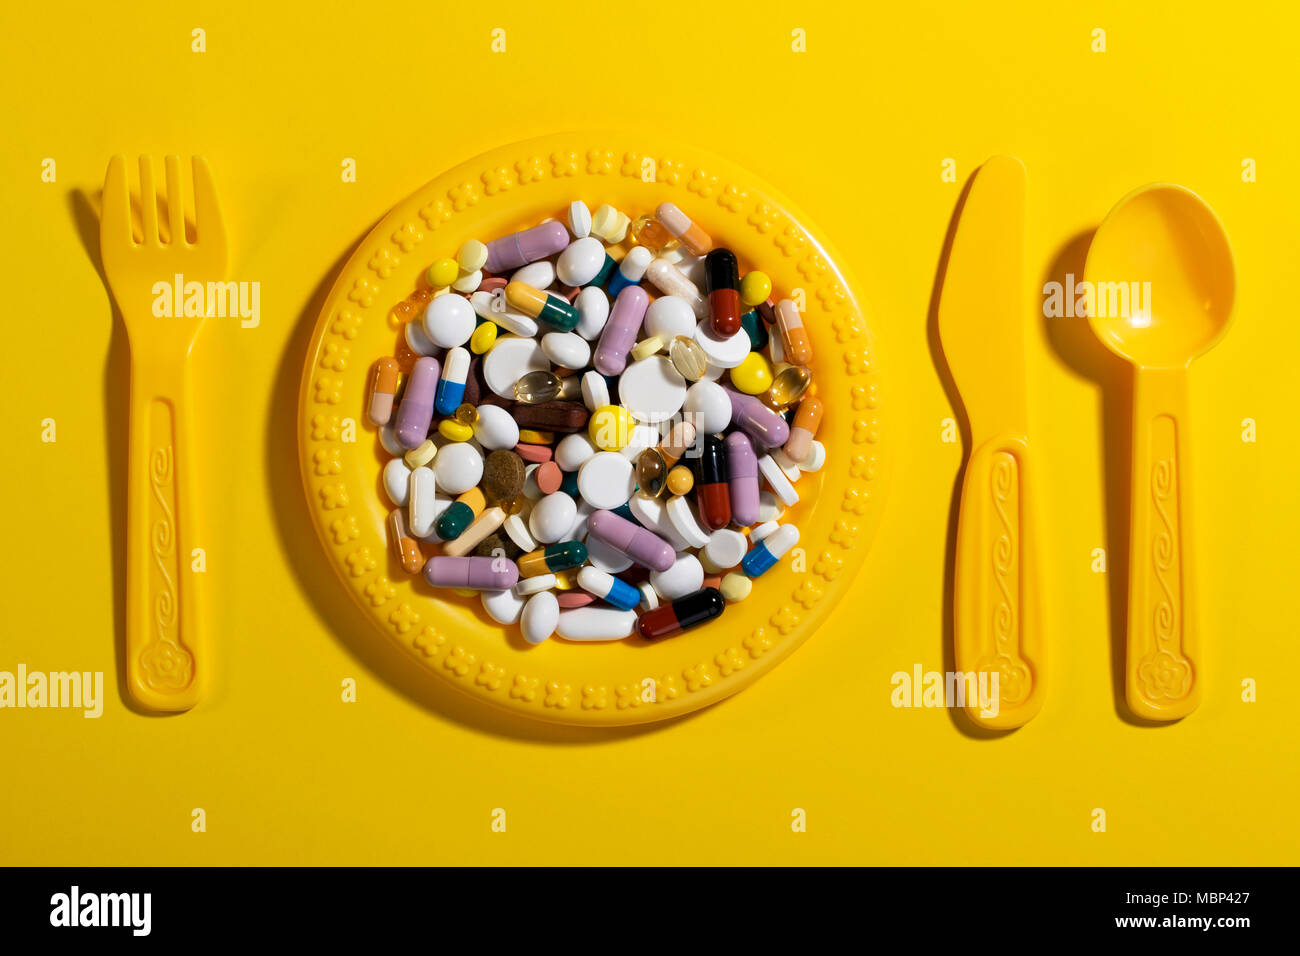 Kinder Teller mit Besteck mit bunten Pillen gefüllt. Konzept für eine Überdosis Medikamente in der Ernährung der Kinder. Stockfoto